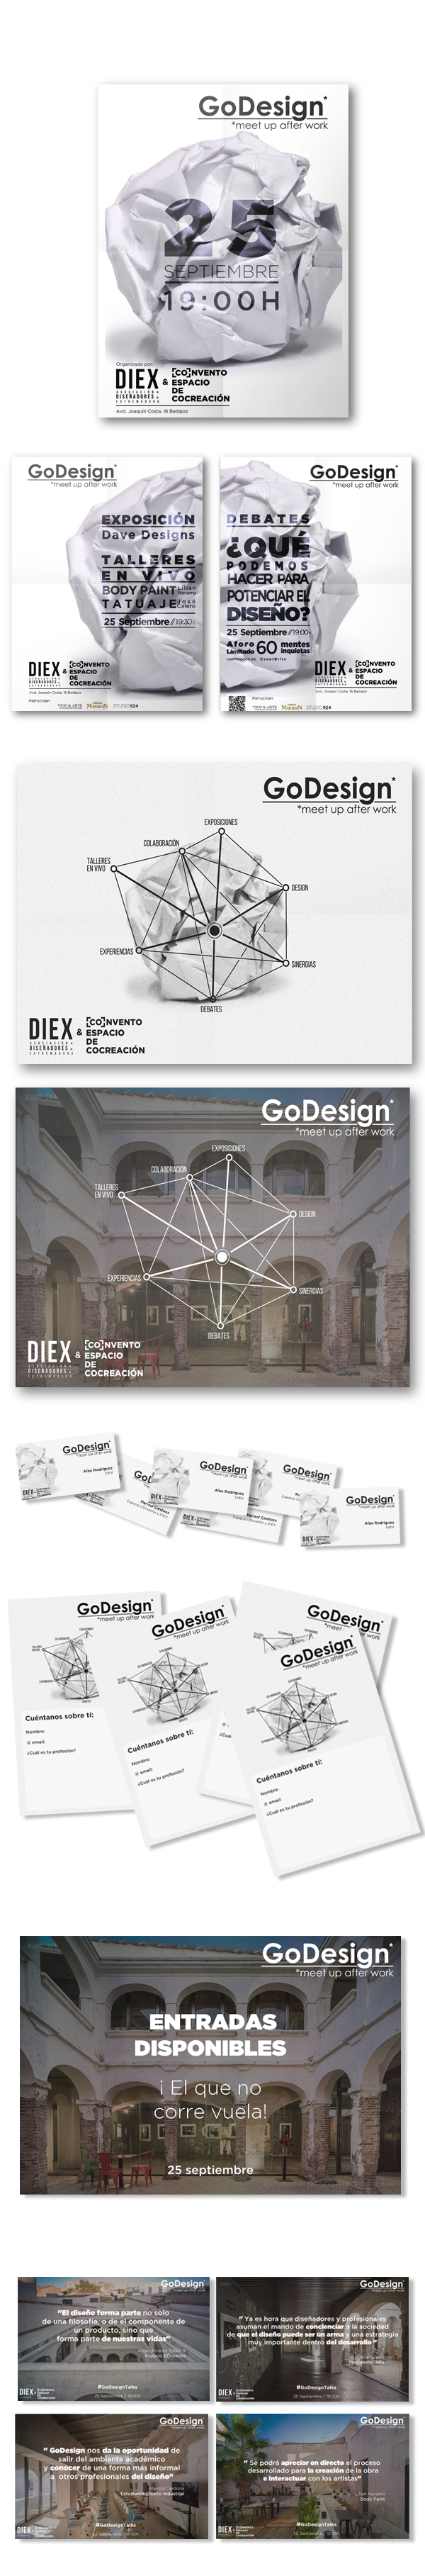 eventos GoDesign Diex convento Evento diseño Extremadura